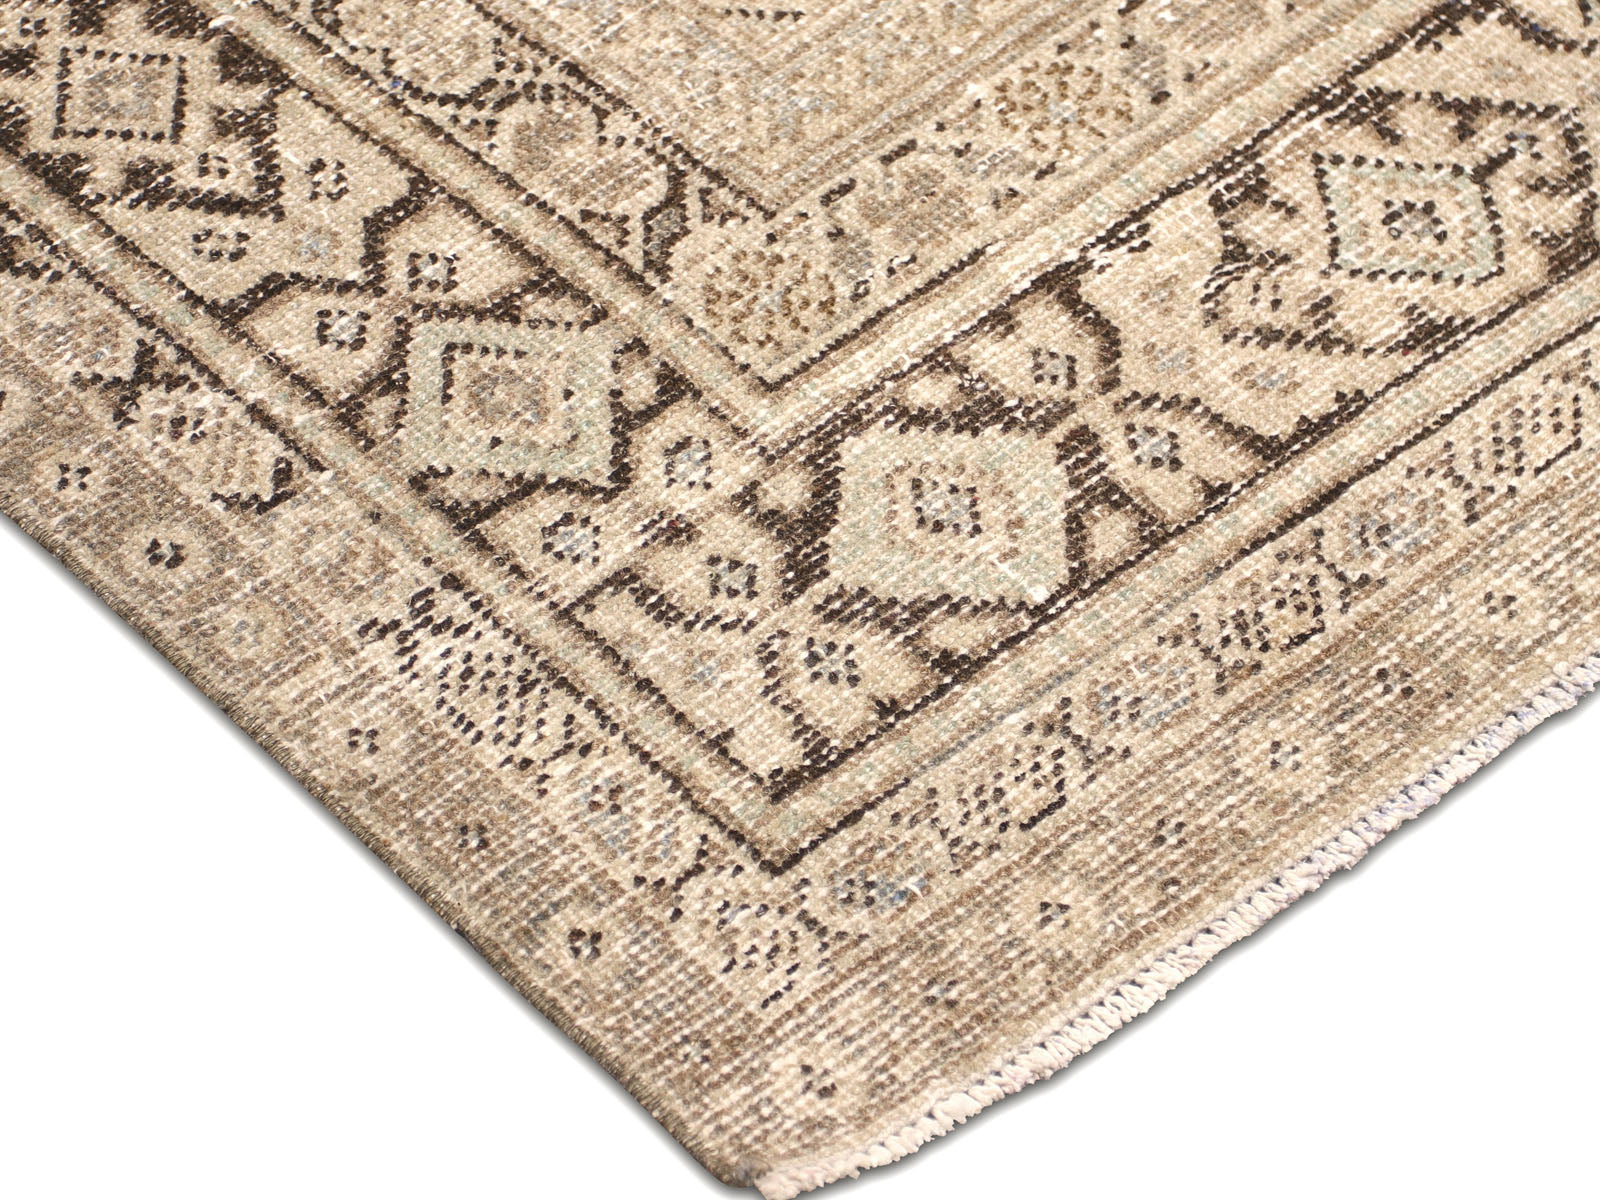 Semi Antique Persian Mahal Rug - 8'8" x 11'10"